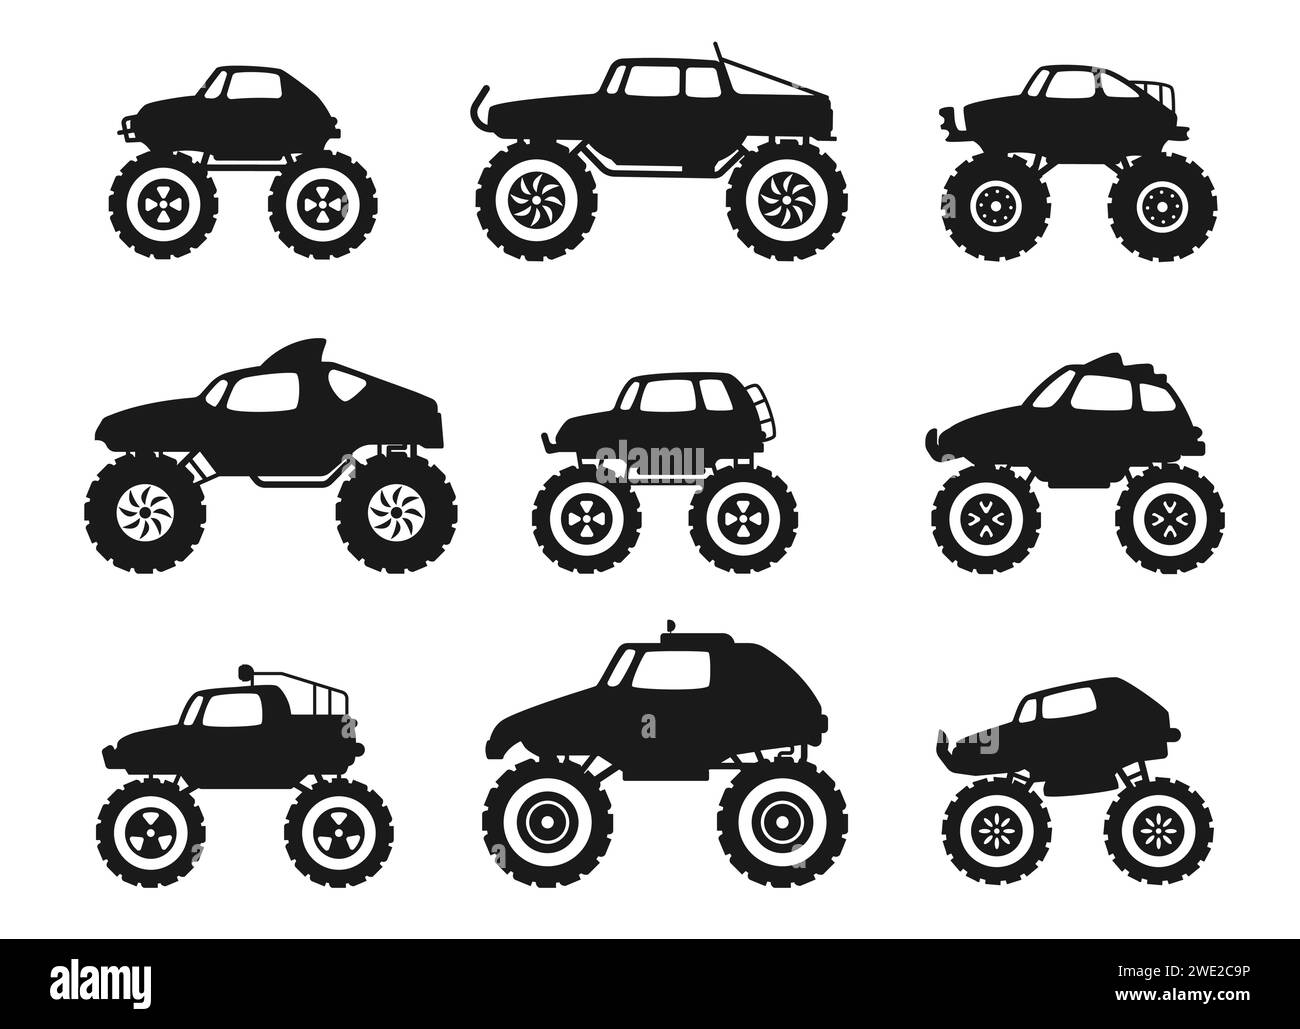 Schwarze Monster Truck Symbole. Geländewagen mit Dieselmotor, Reifen, Rädern und Auspuff, Dieselstapler mit Turbolader und flachen Stoßfängern und Flammen. Vektor Stock Vektor